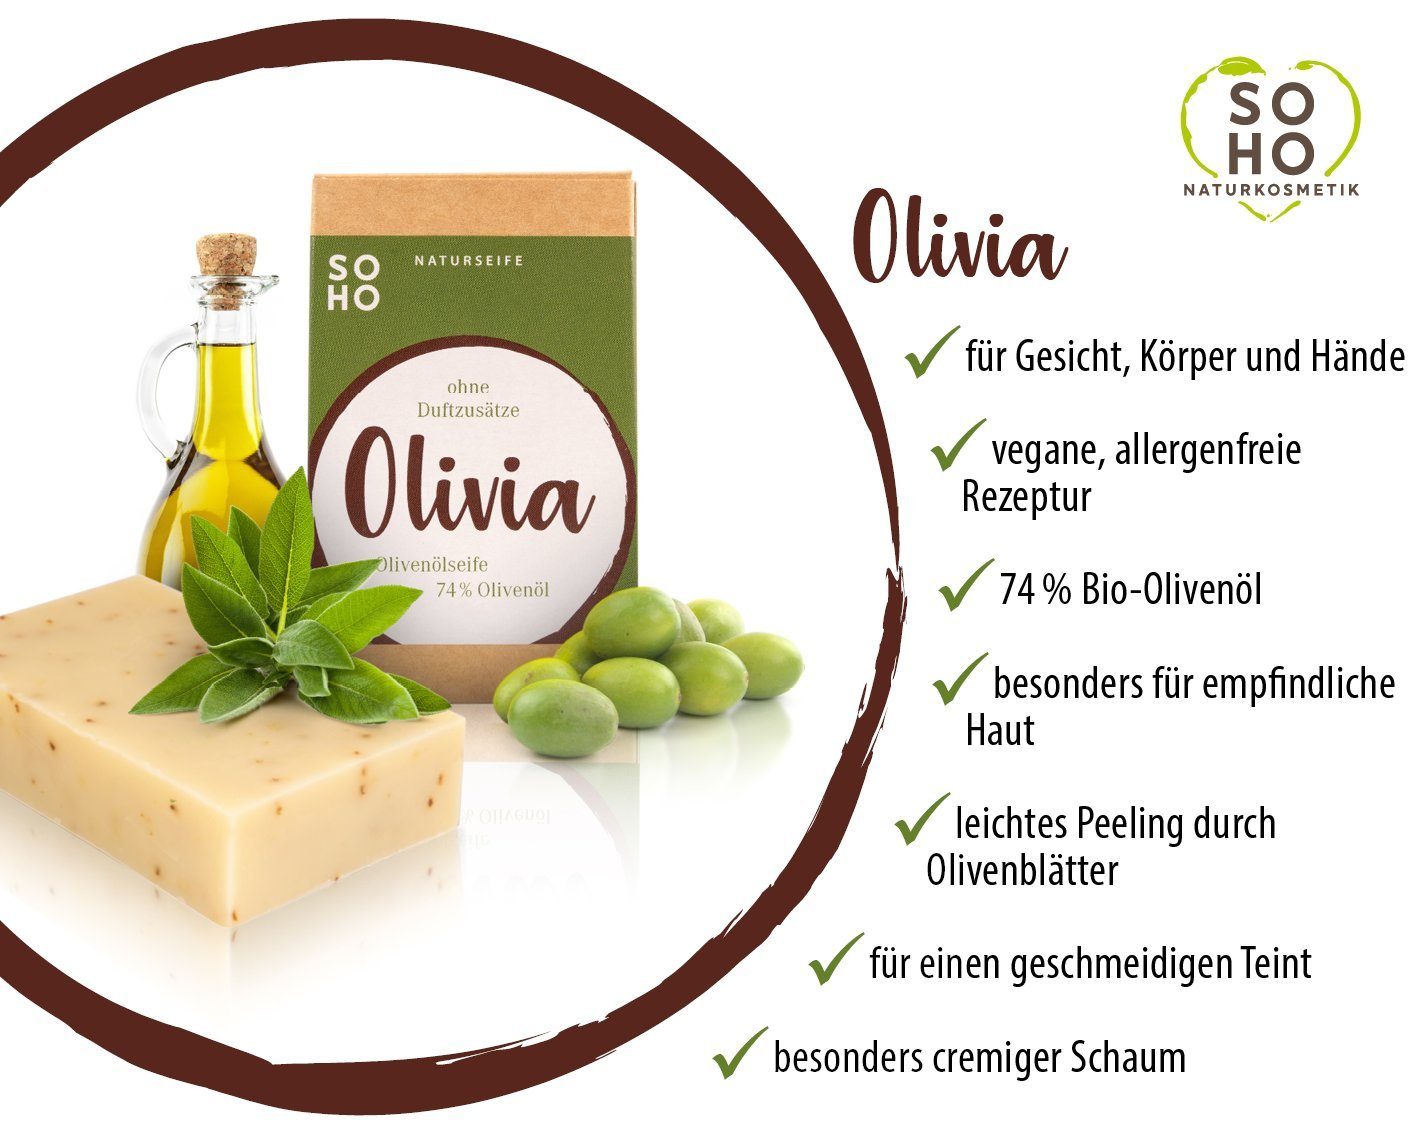 SOHO Naturkosmetik Gesichtsseife Peelingseife Olivia 74 Olivenöl allergenfrei, % mit